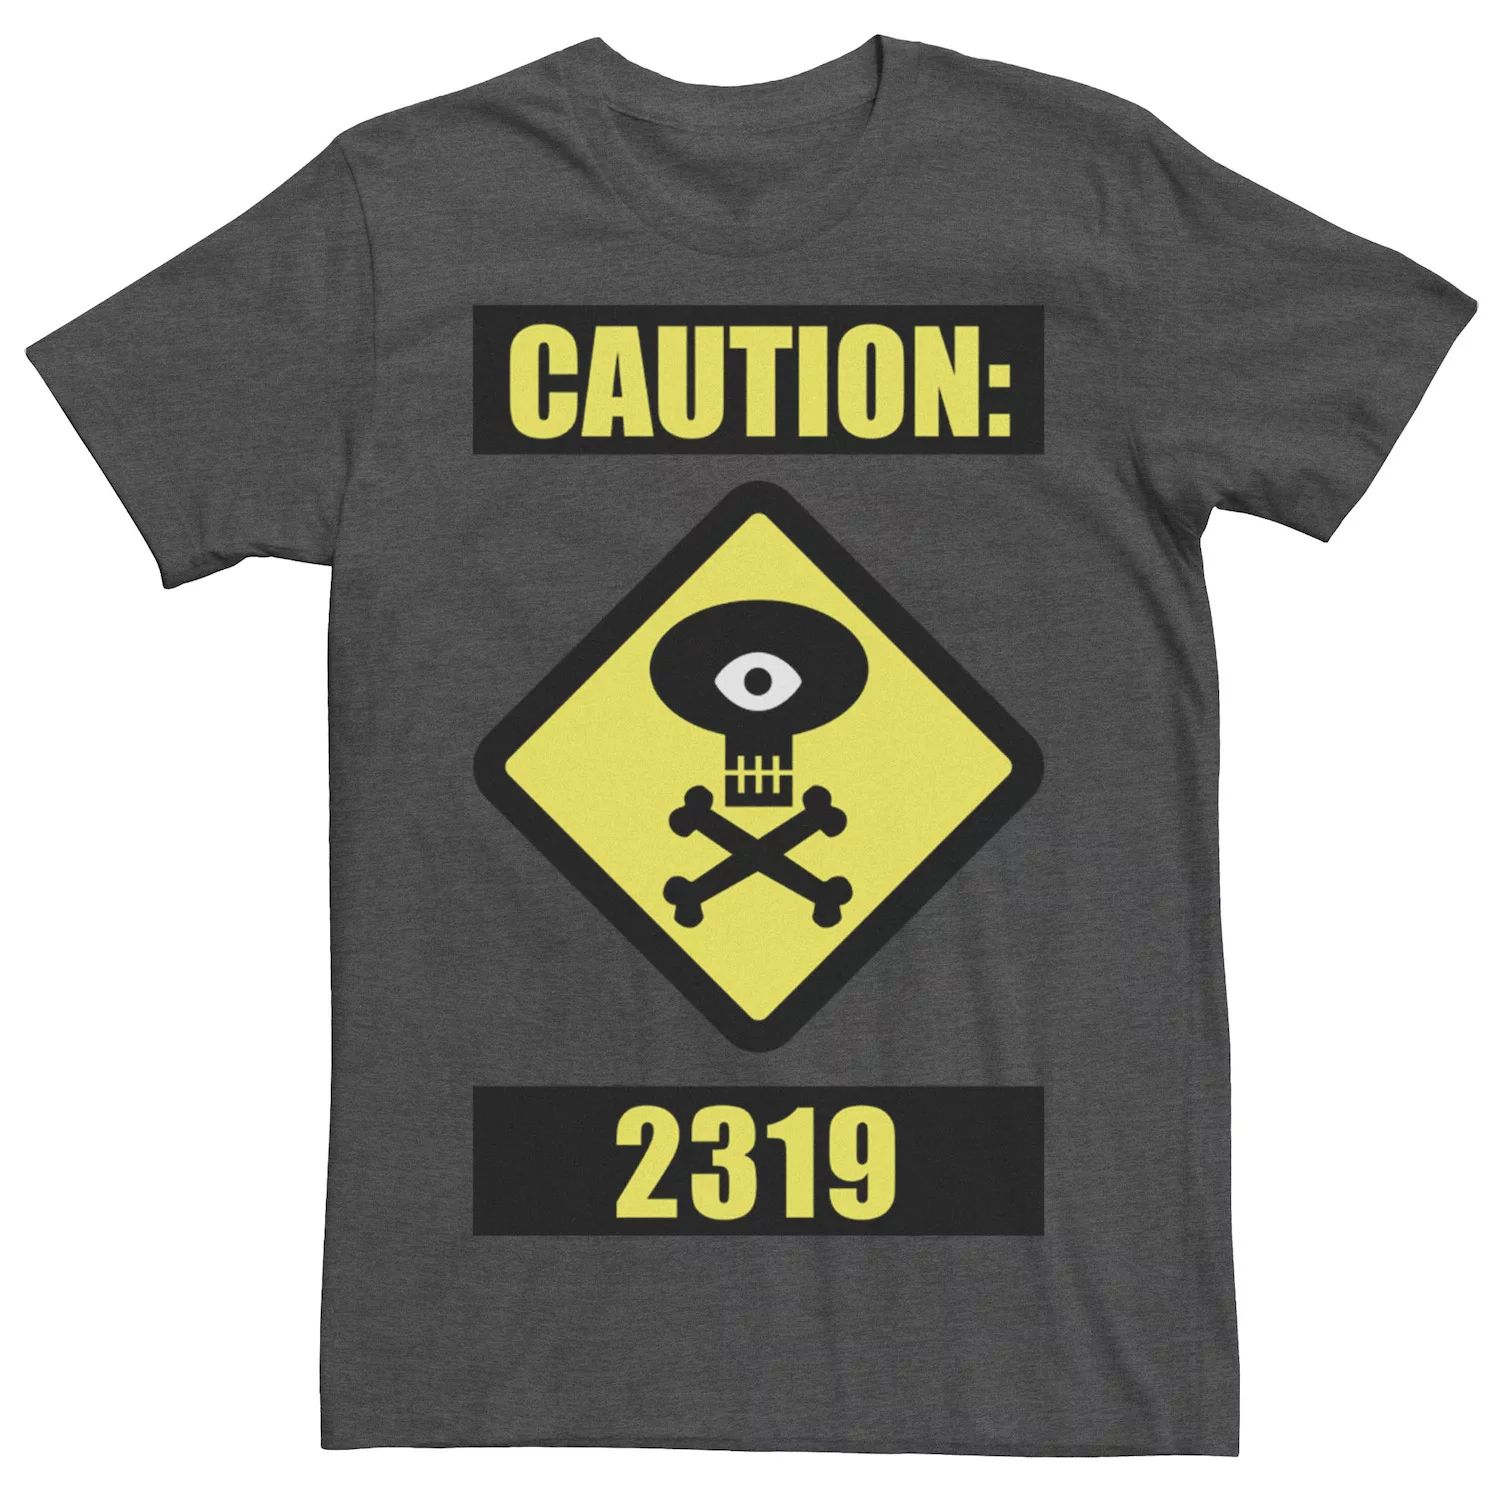 Мужская футболка Disney/Pixar Monsters University Caution 2319 Disney / Pixar